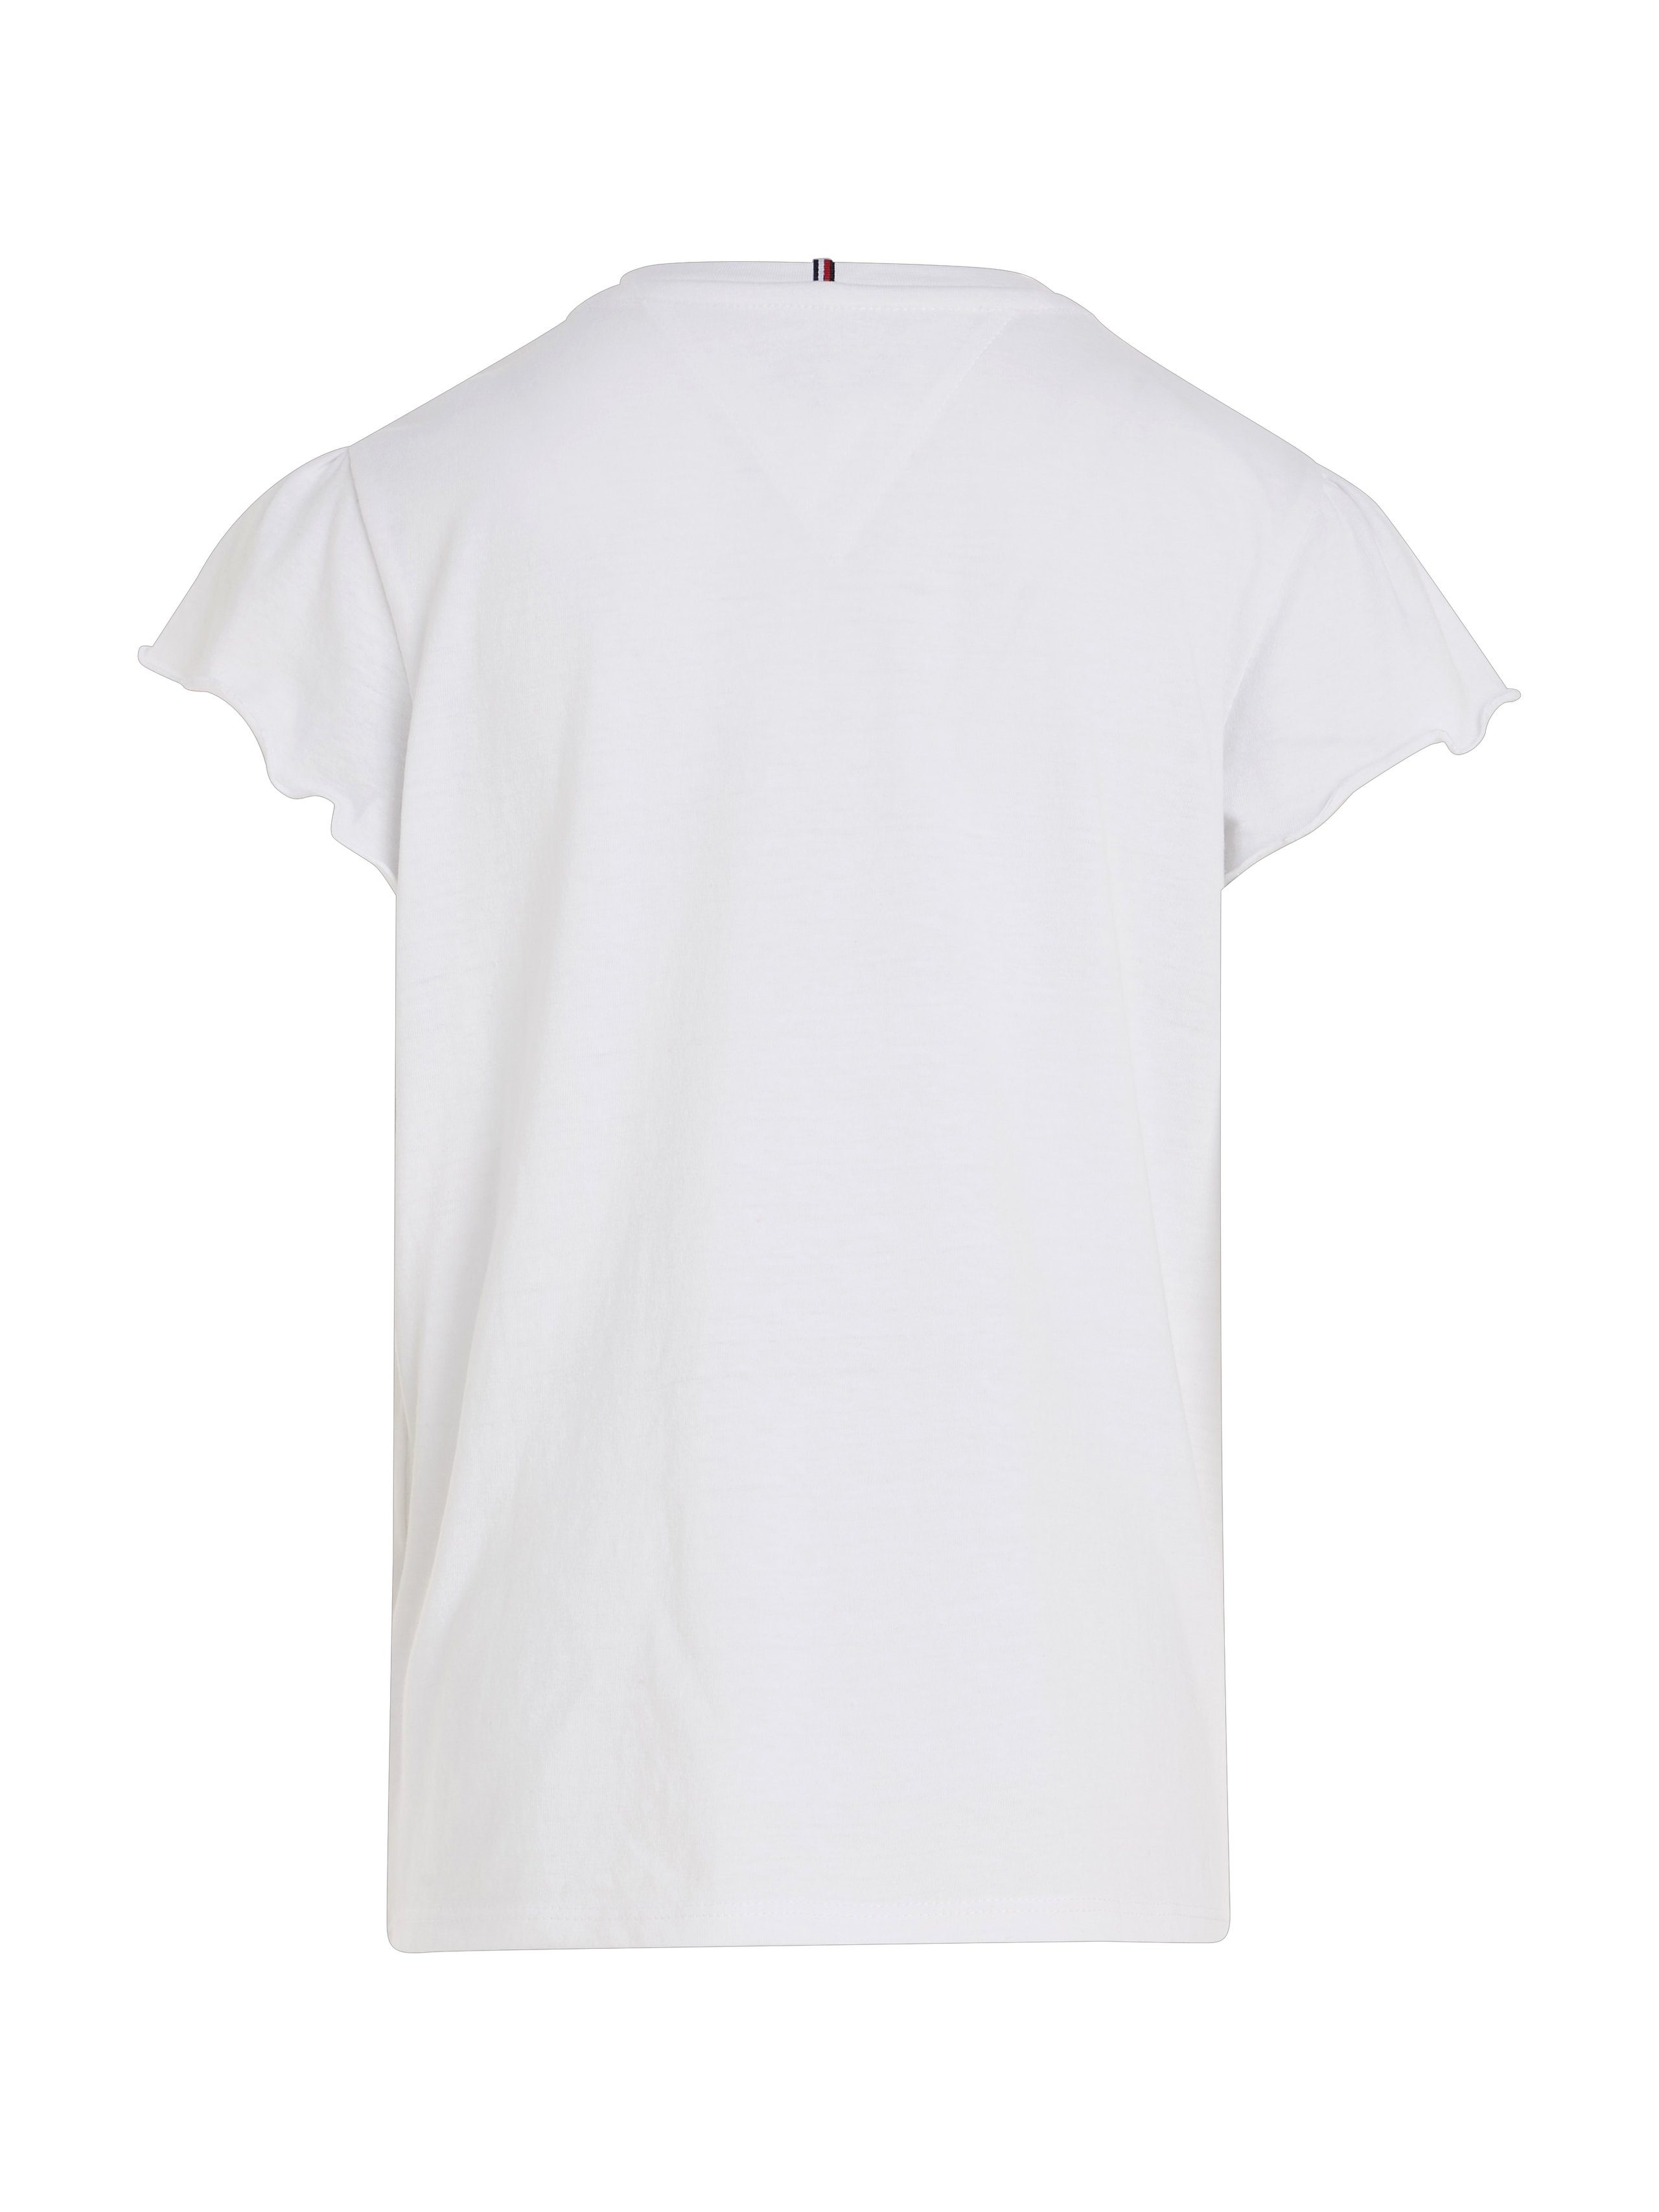 TOP T-Shirt Tommy white SLEEVE für RUFFLE Hilfiger Babys ESSENTIAL